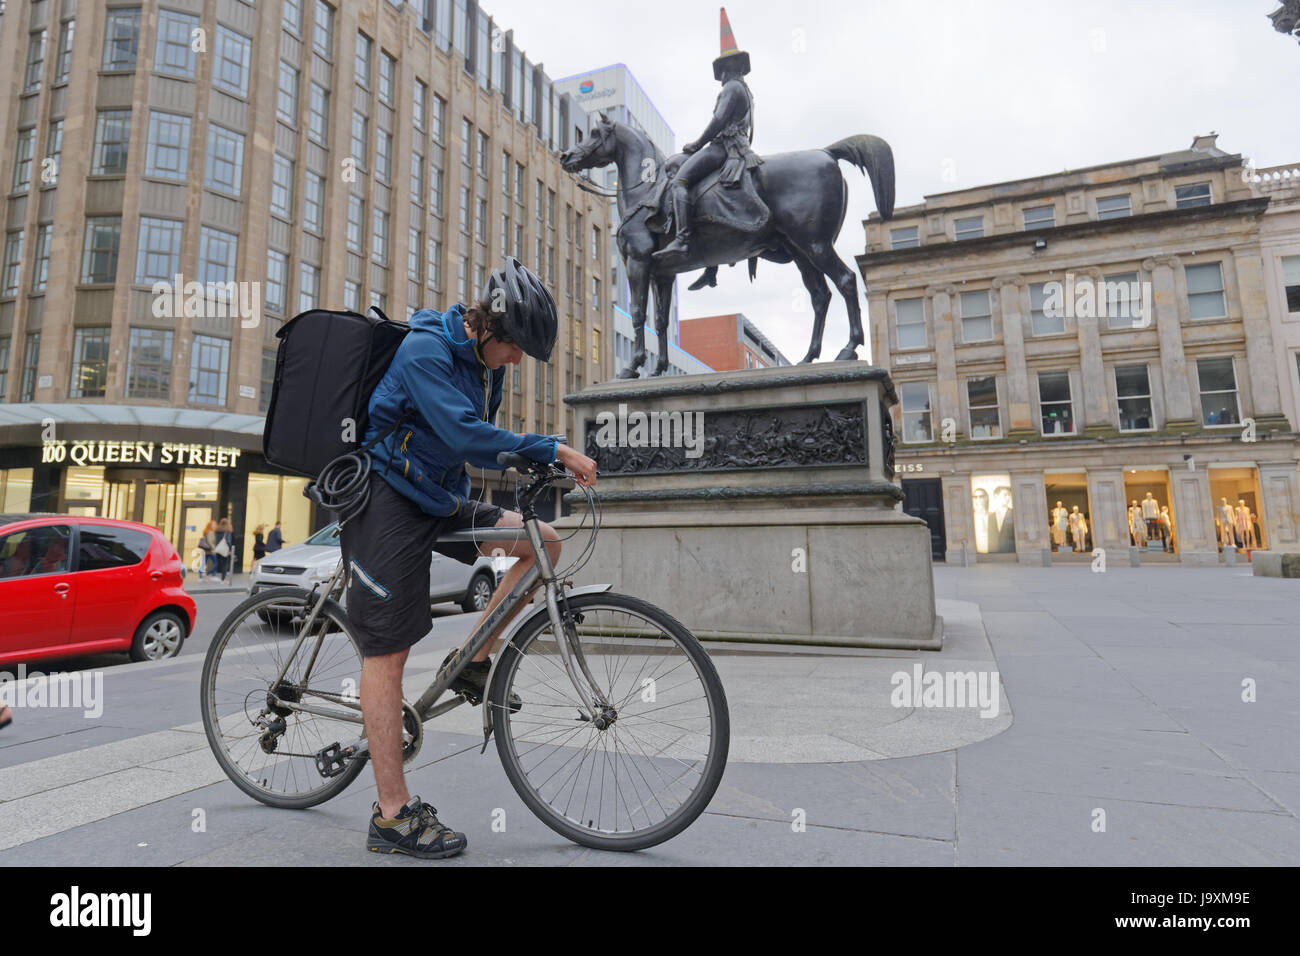 Deliveroo livraison Uber cyclistes motards pilotes sur la rue offrant à Glasgow en vue de la tête de cône statue du duc de Wellington Banque D'Images